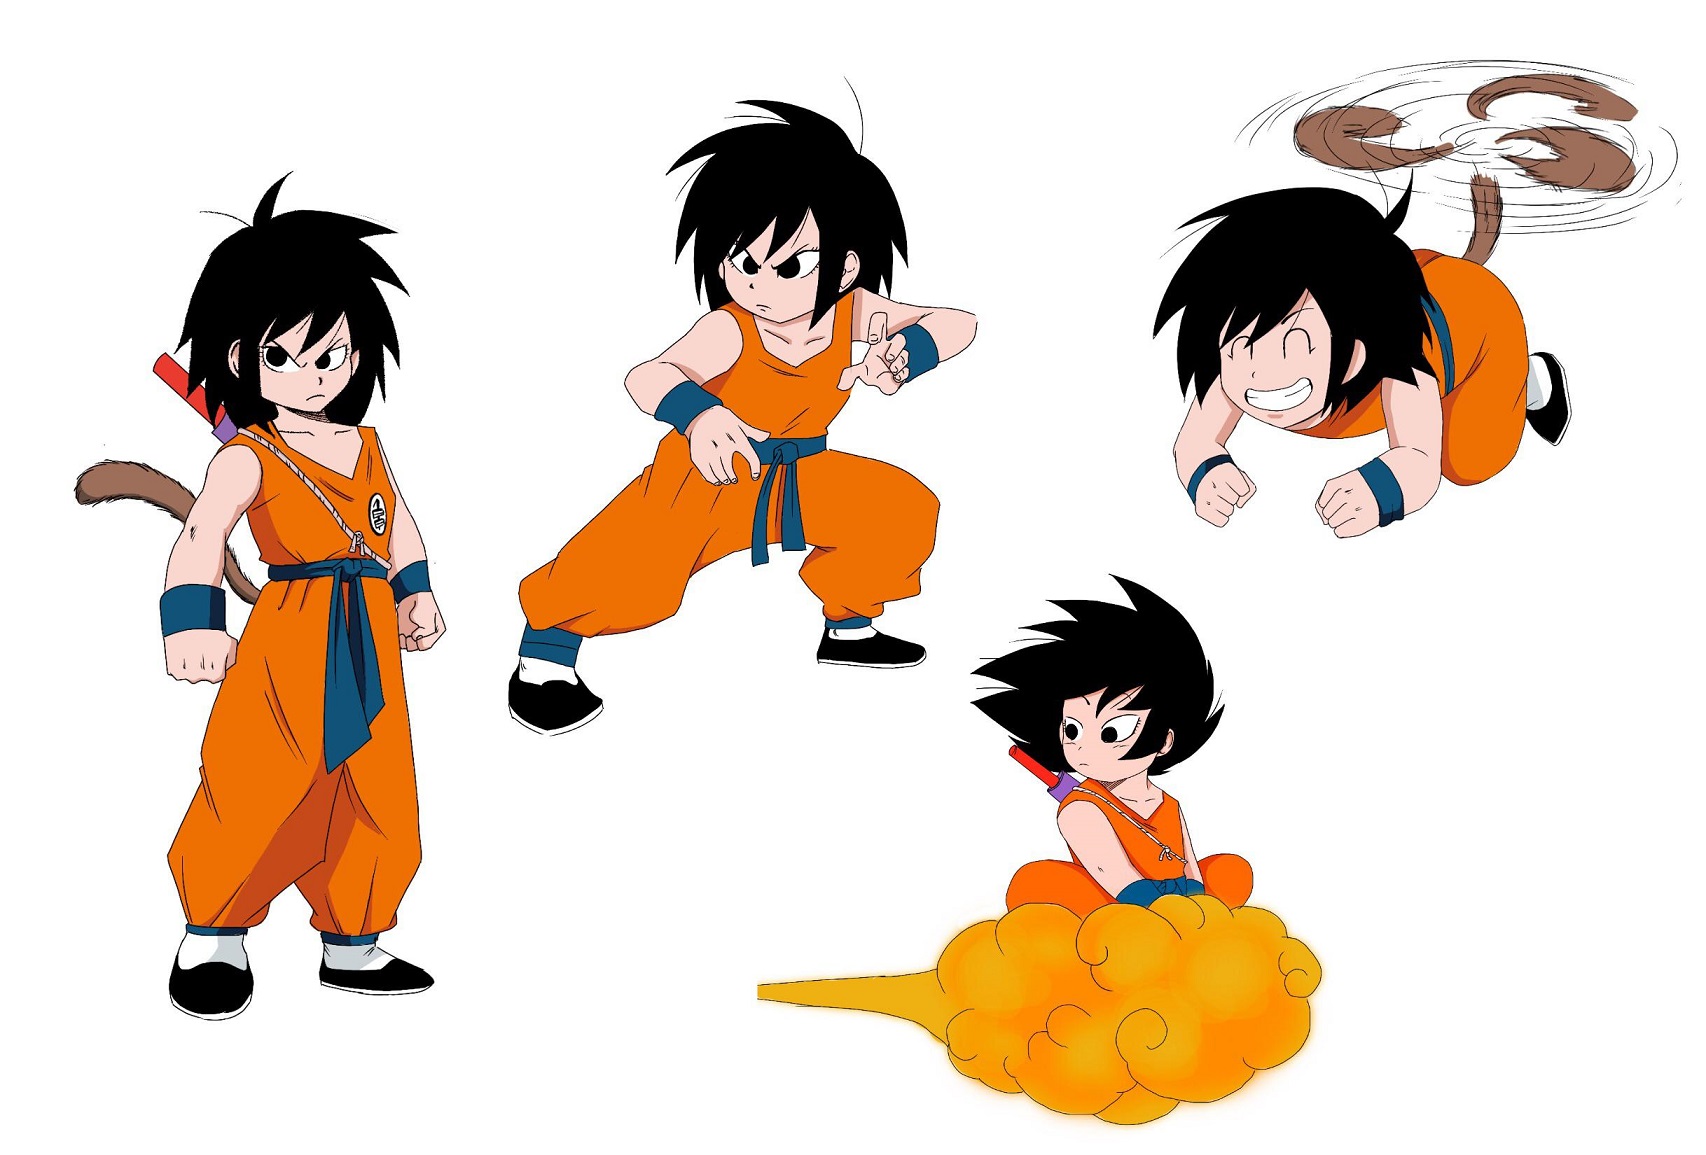 Dragon Ball  Mãe faz penteado de Goku em seu filho, e vídeo viraliza